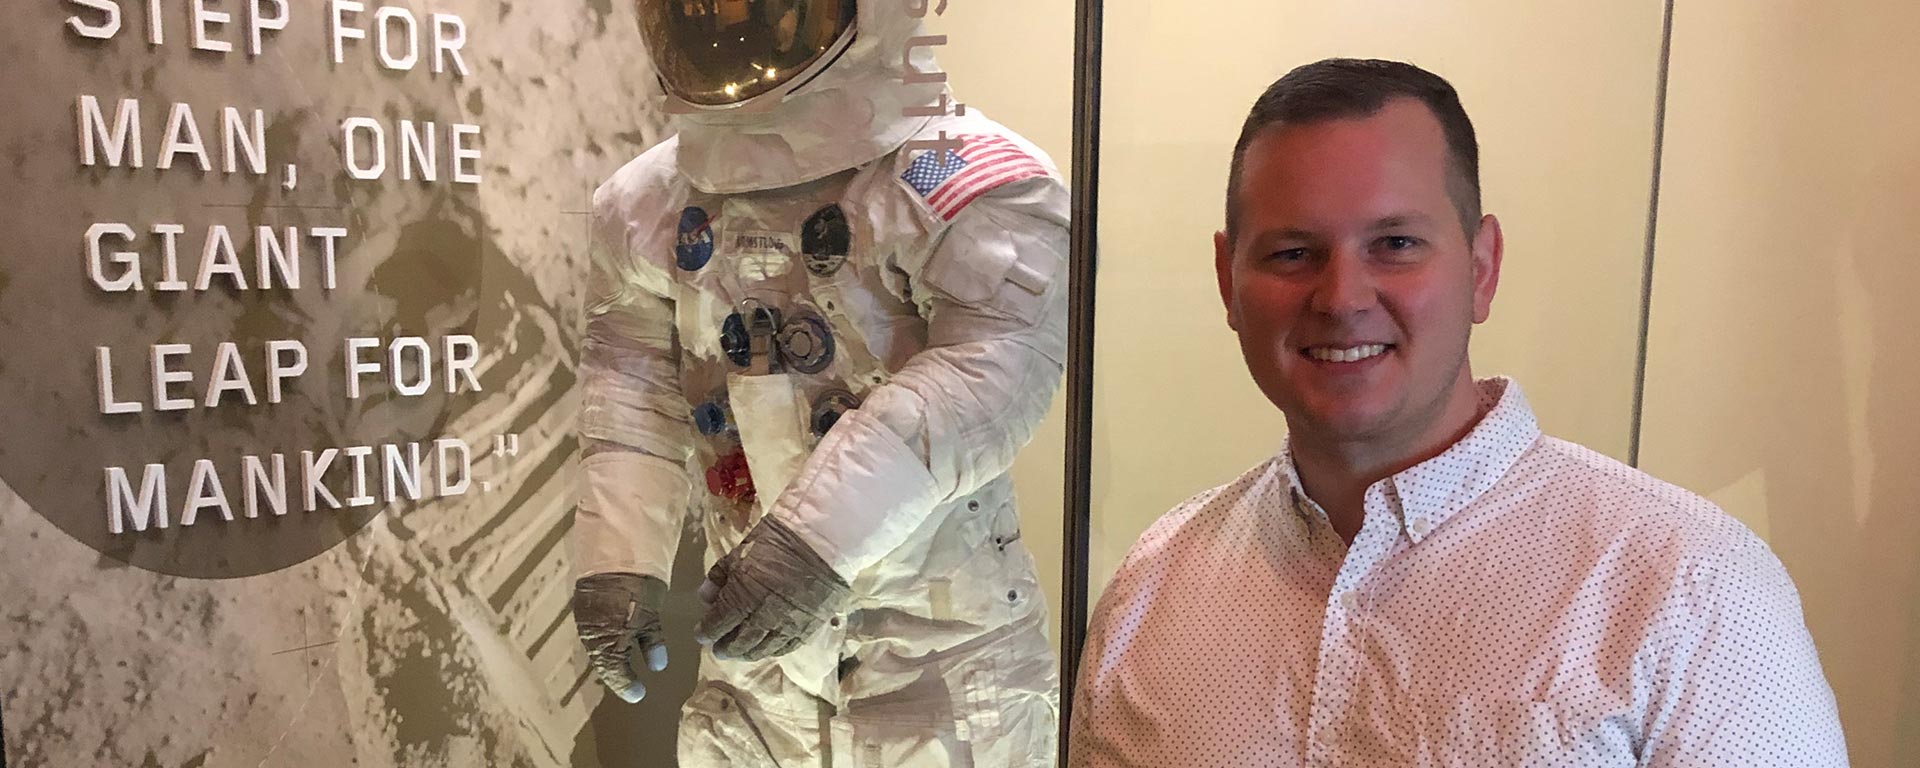 Aaron Bolen standing next to an astronaut suit exhibit.